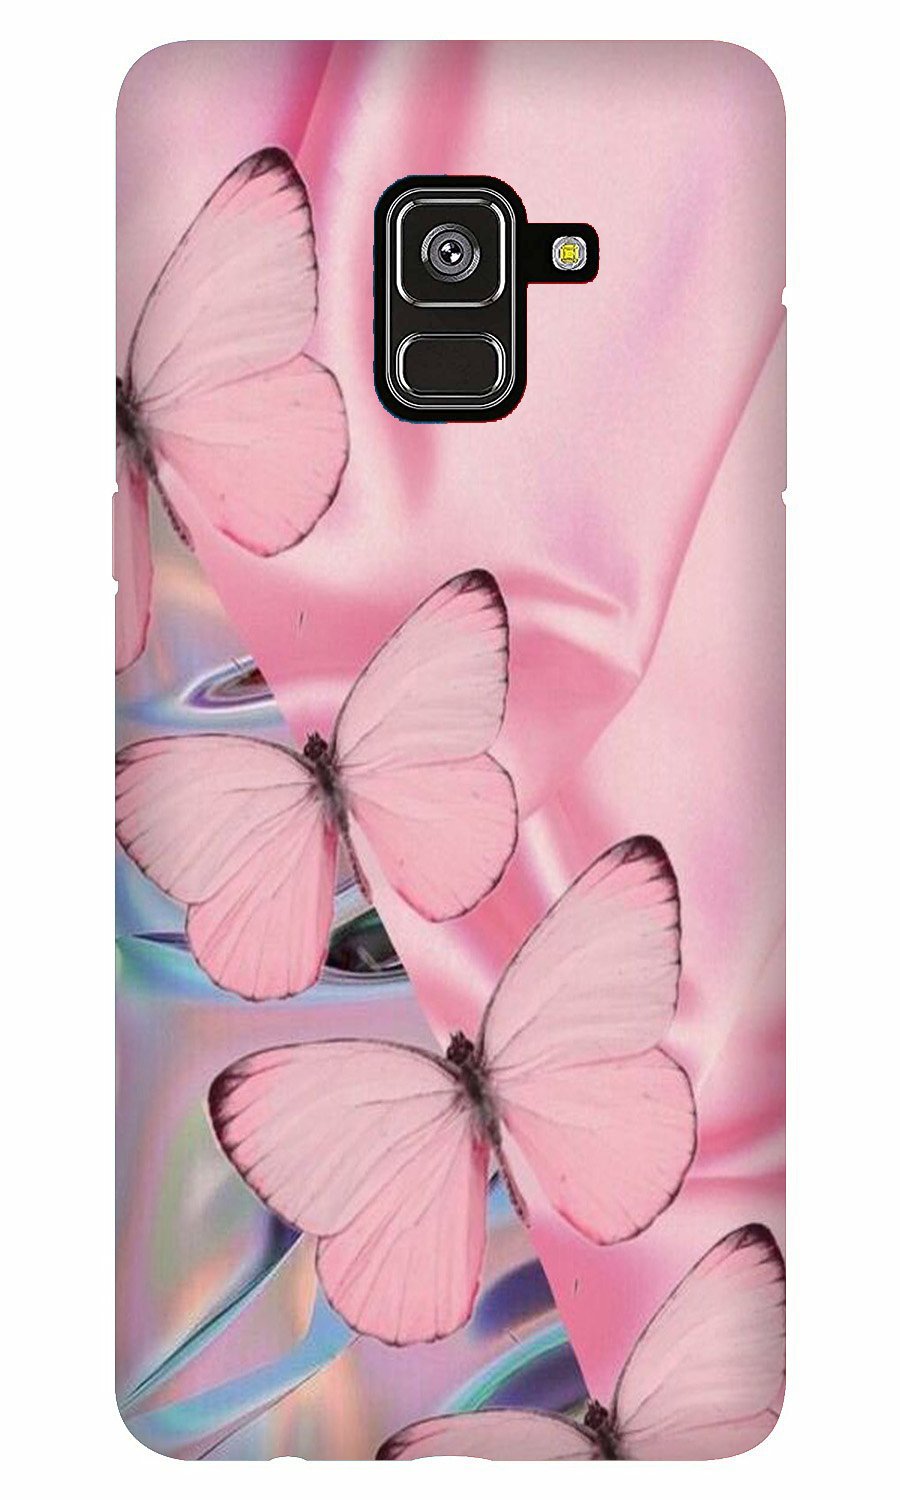 Butterflies Case for Galaxy A5 (2018)